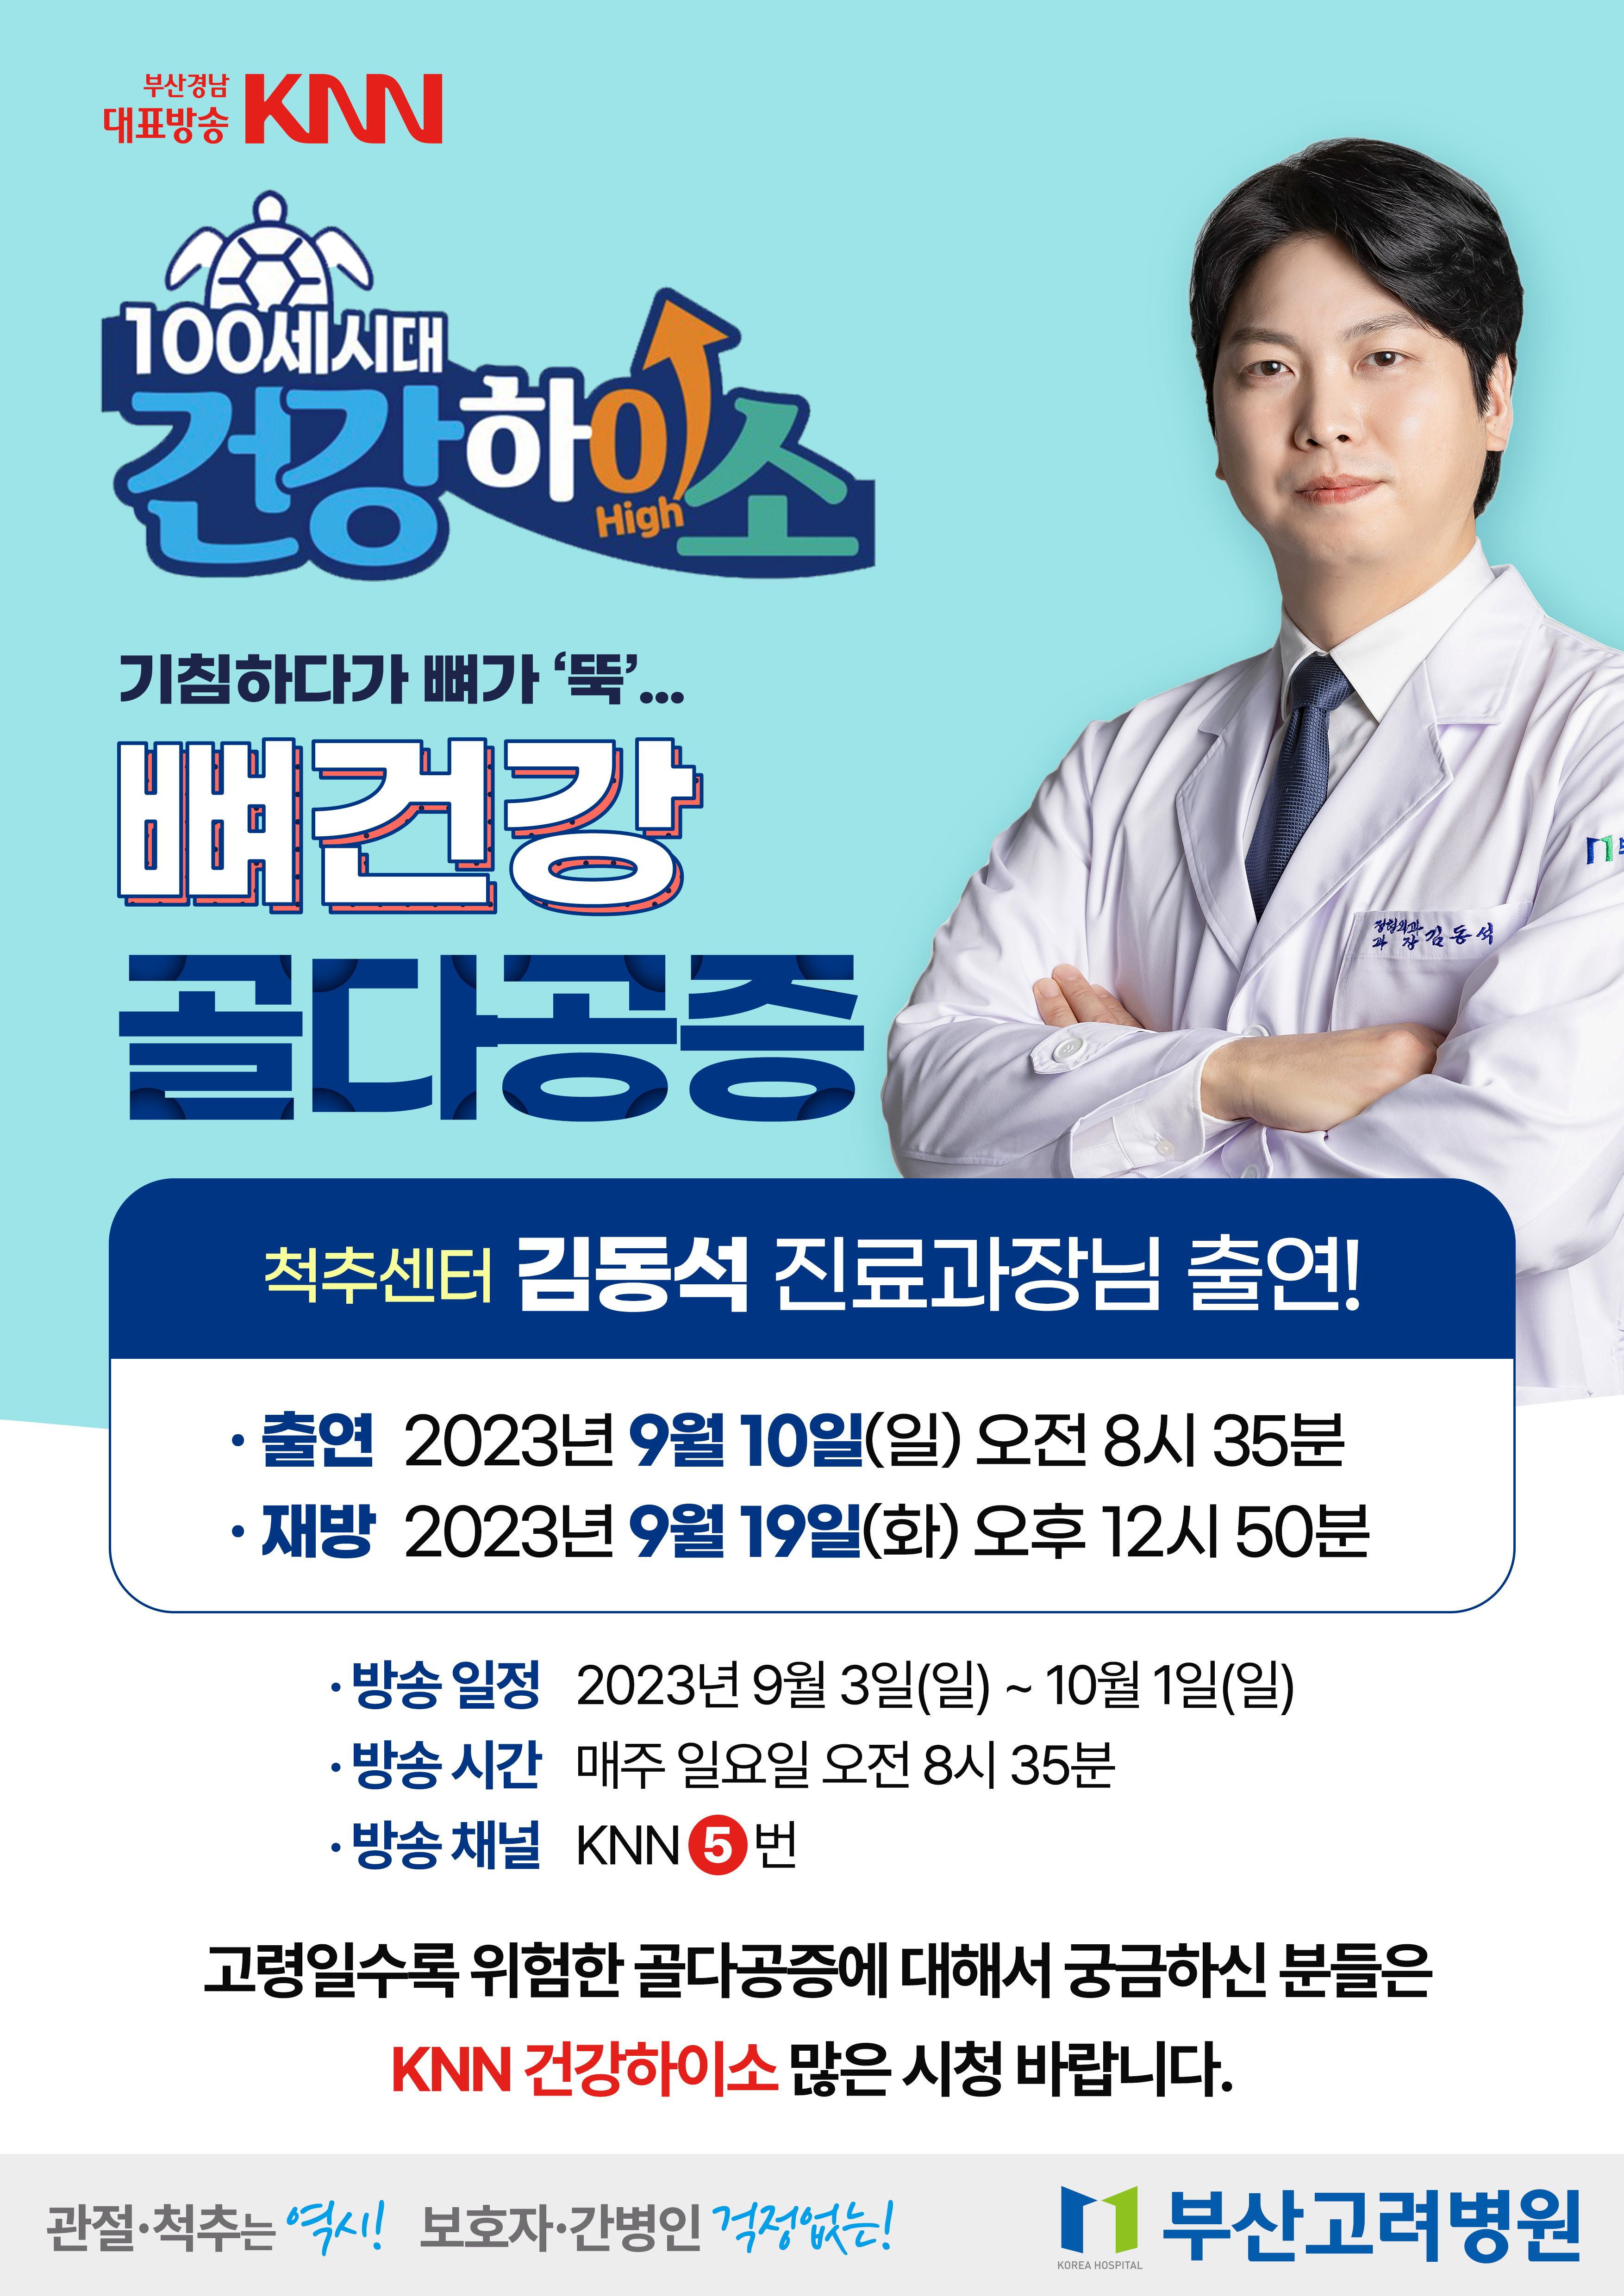 포스터-knn-건강하이소-김동석-과장님.png 이미지를 클릭하시면 원본크기를 보실 수 있습니다.